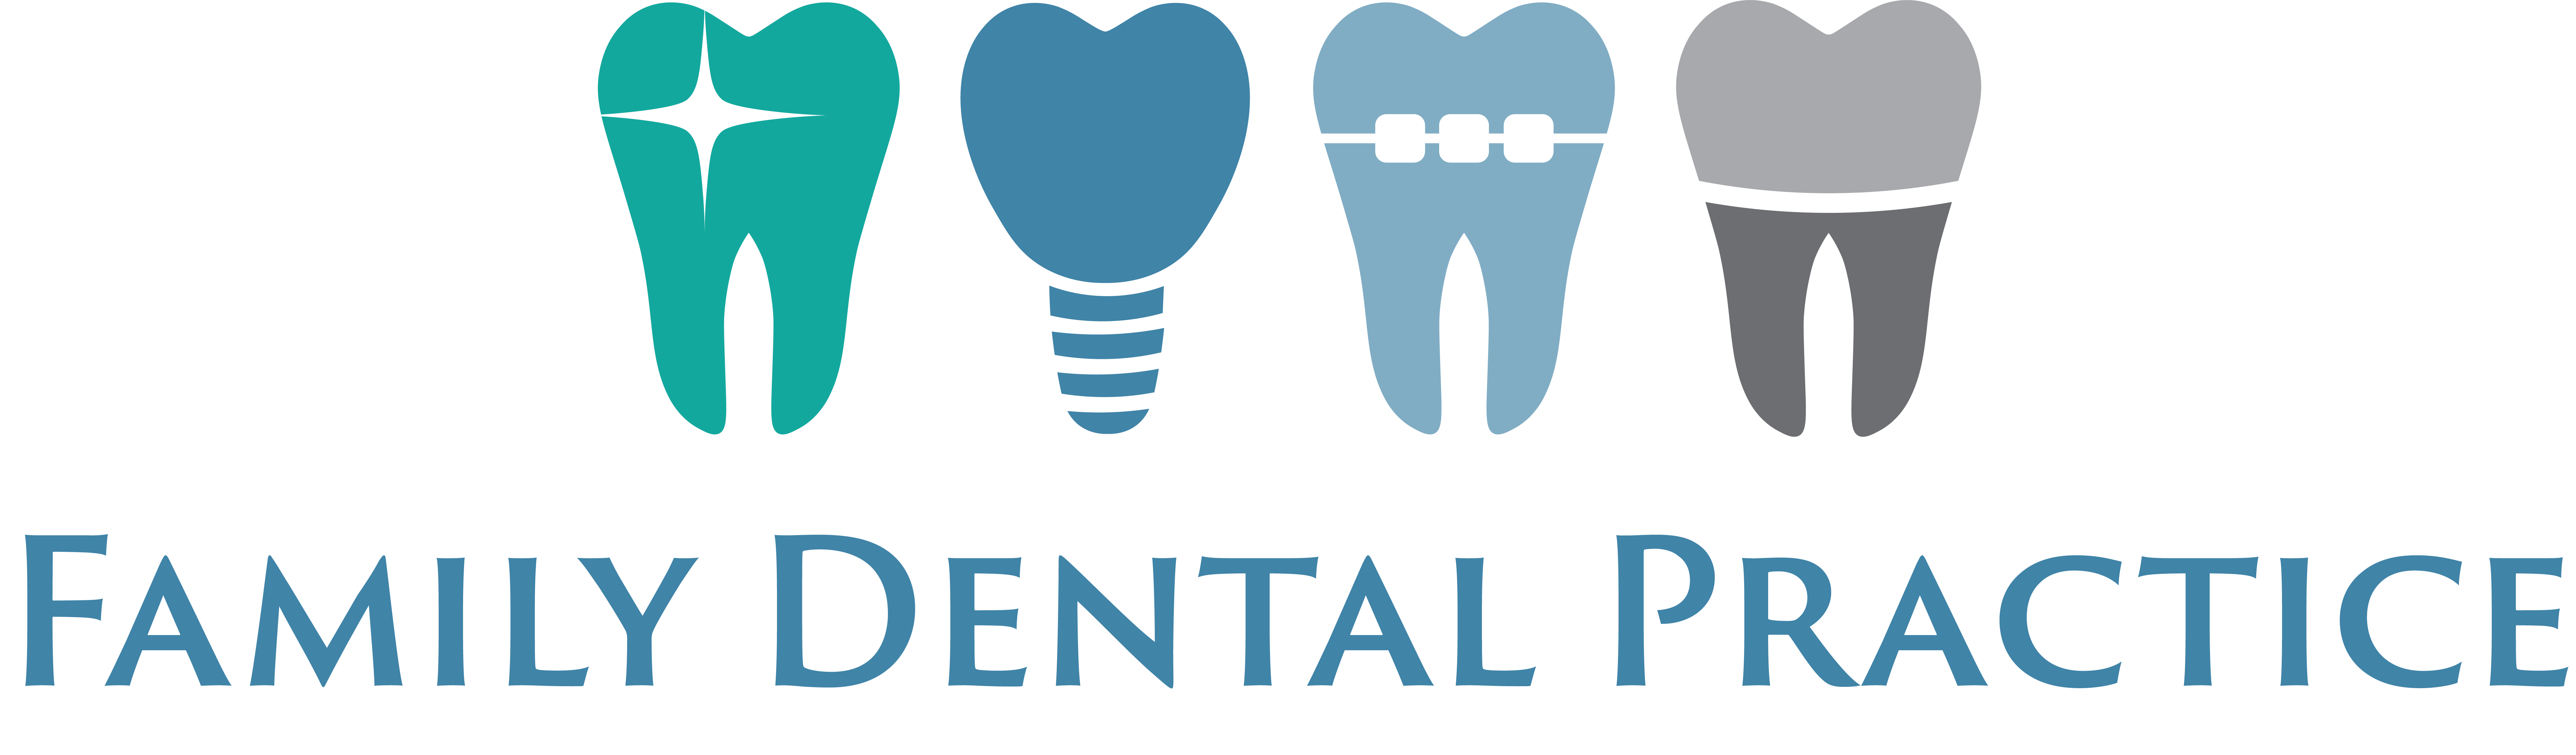 Family Dental Practice - Dentist in Alberton Icon